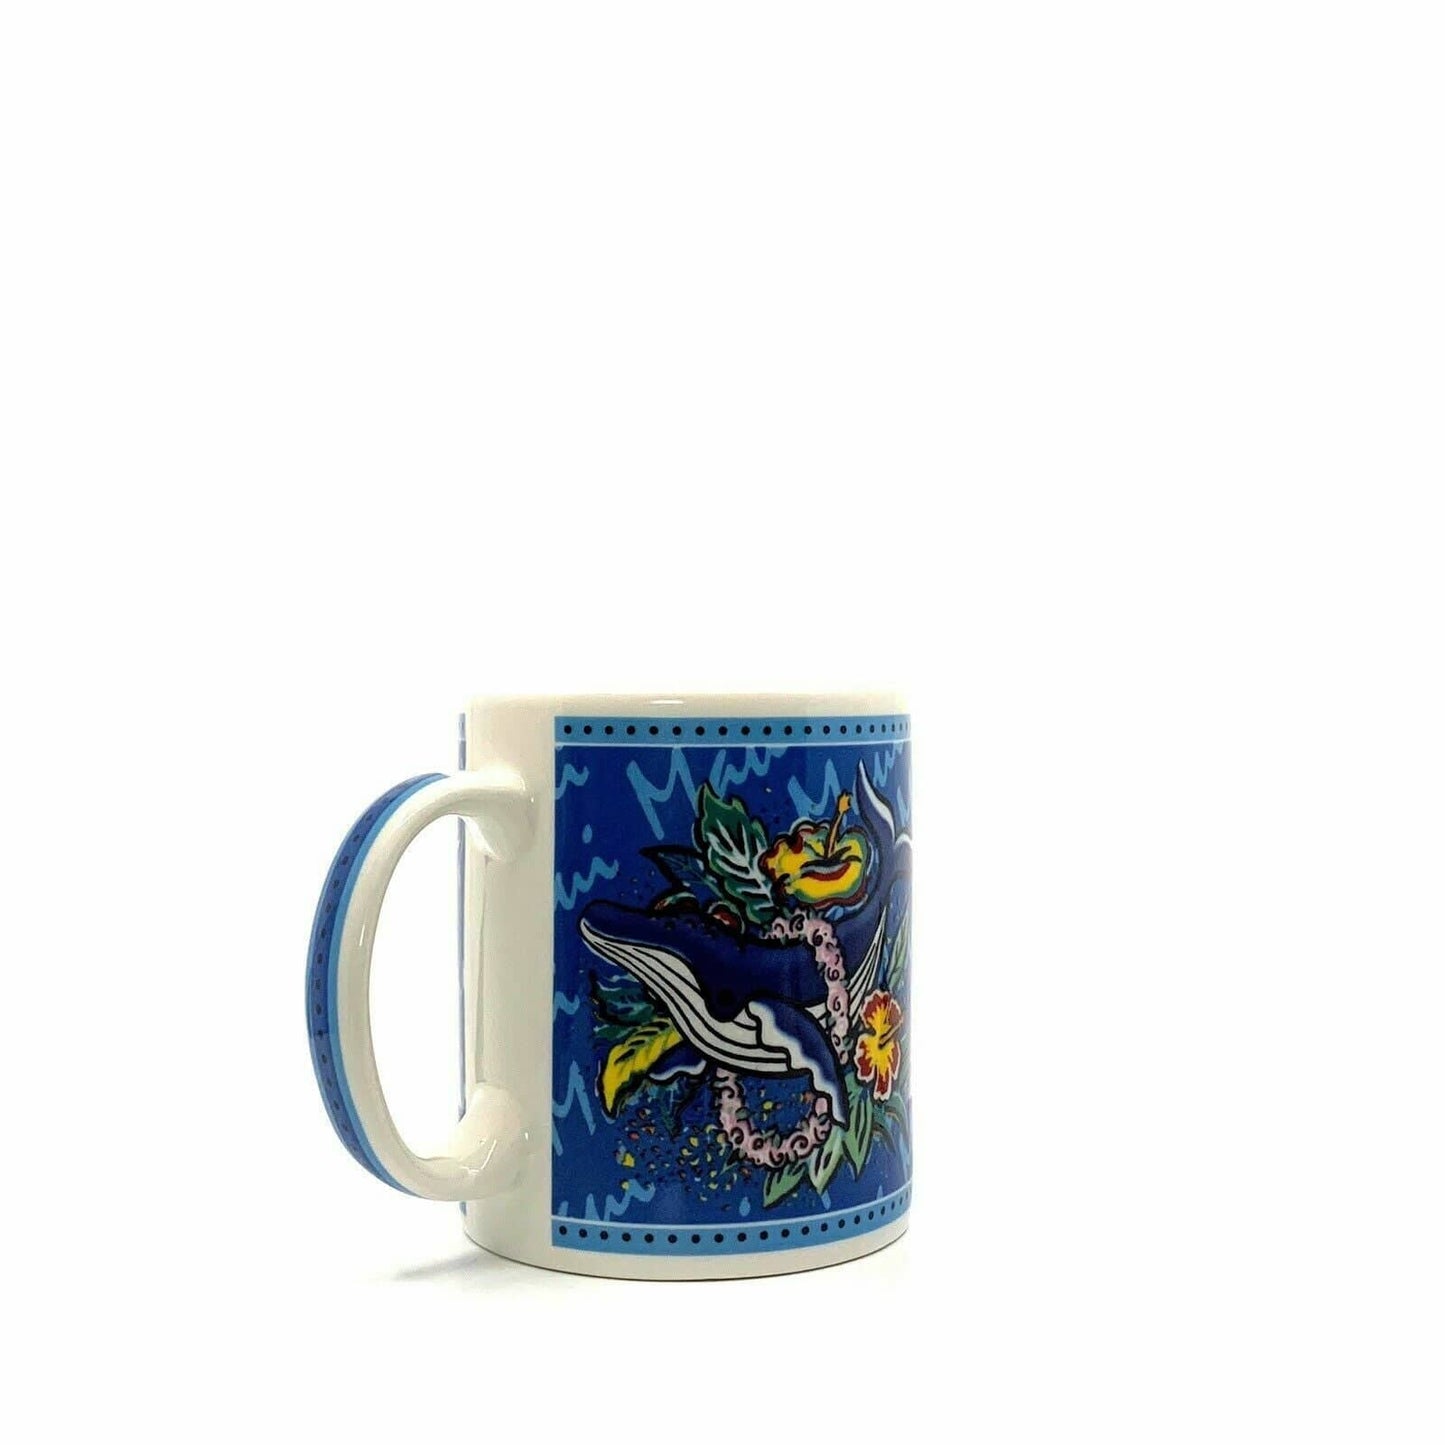 Cozy Hilo Hattie Ceramic Coffee Tea Mug Cup - 10oz Vintage-inspired